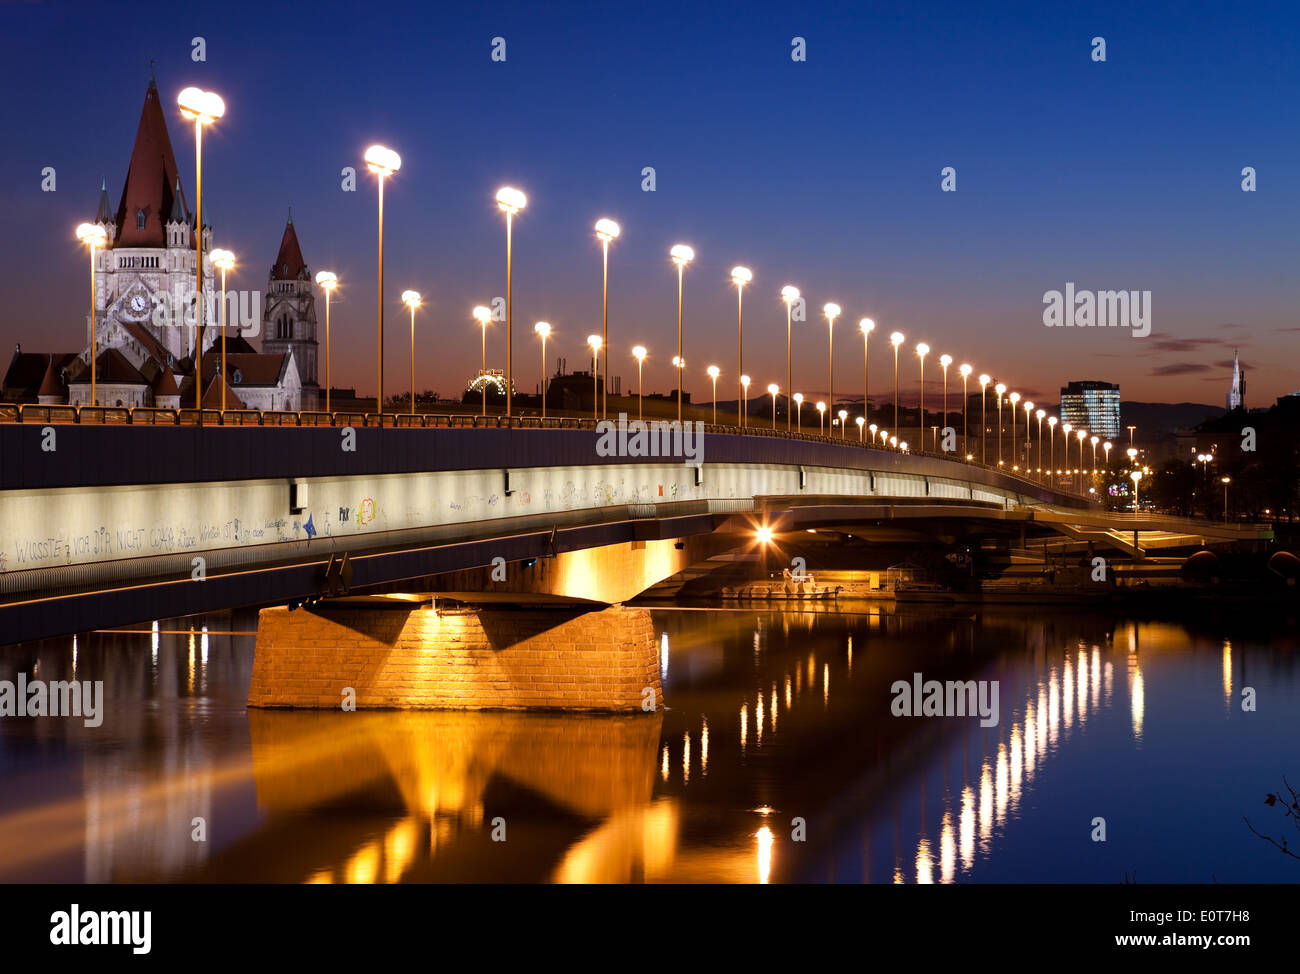 Reichsbrücke am Abend, Wien, Österreich - Reichsbrücke, Vienne, Autriche Banque D'Images